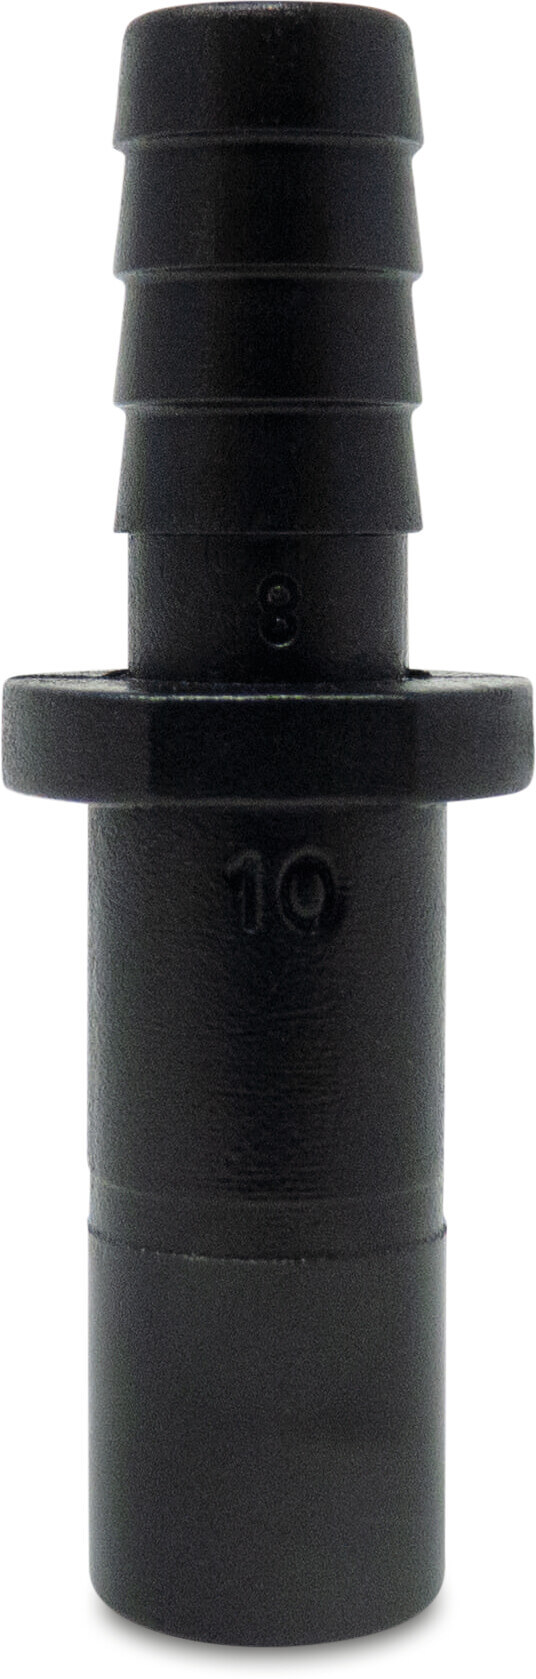 Adaptor nipple POM 6 mm x 4 mm spigot x barbed 20bar black WRAS type Aquaspeed